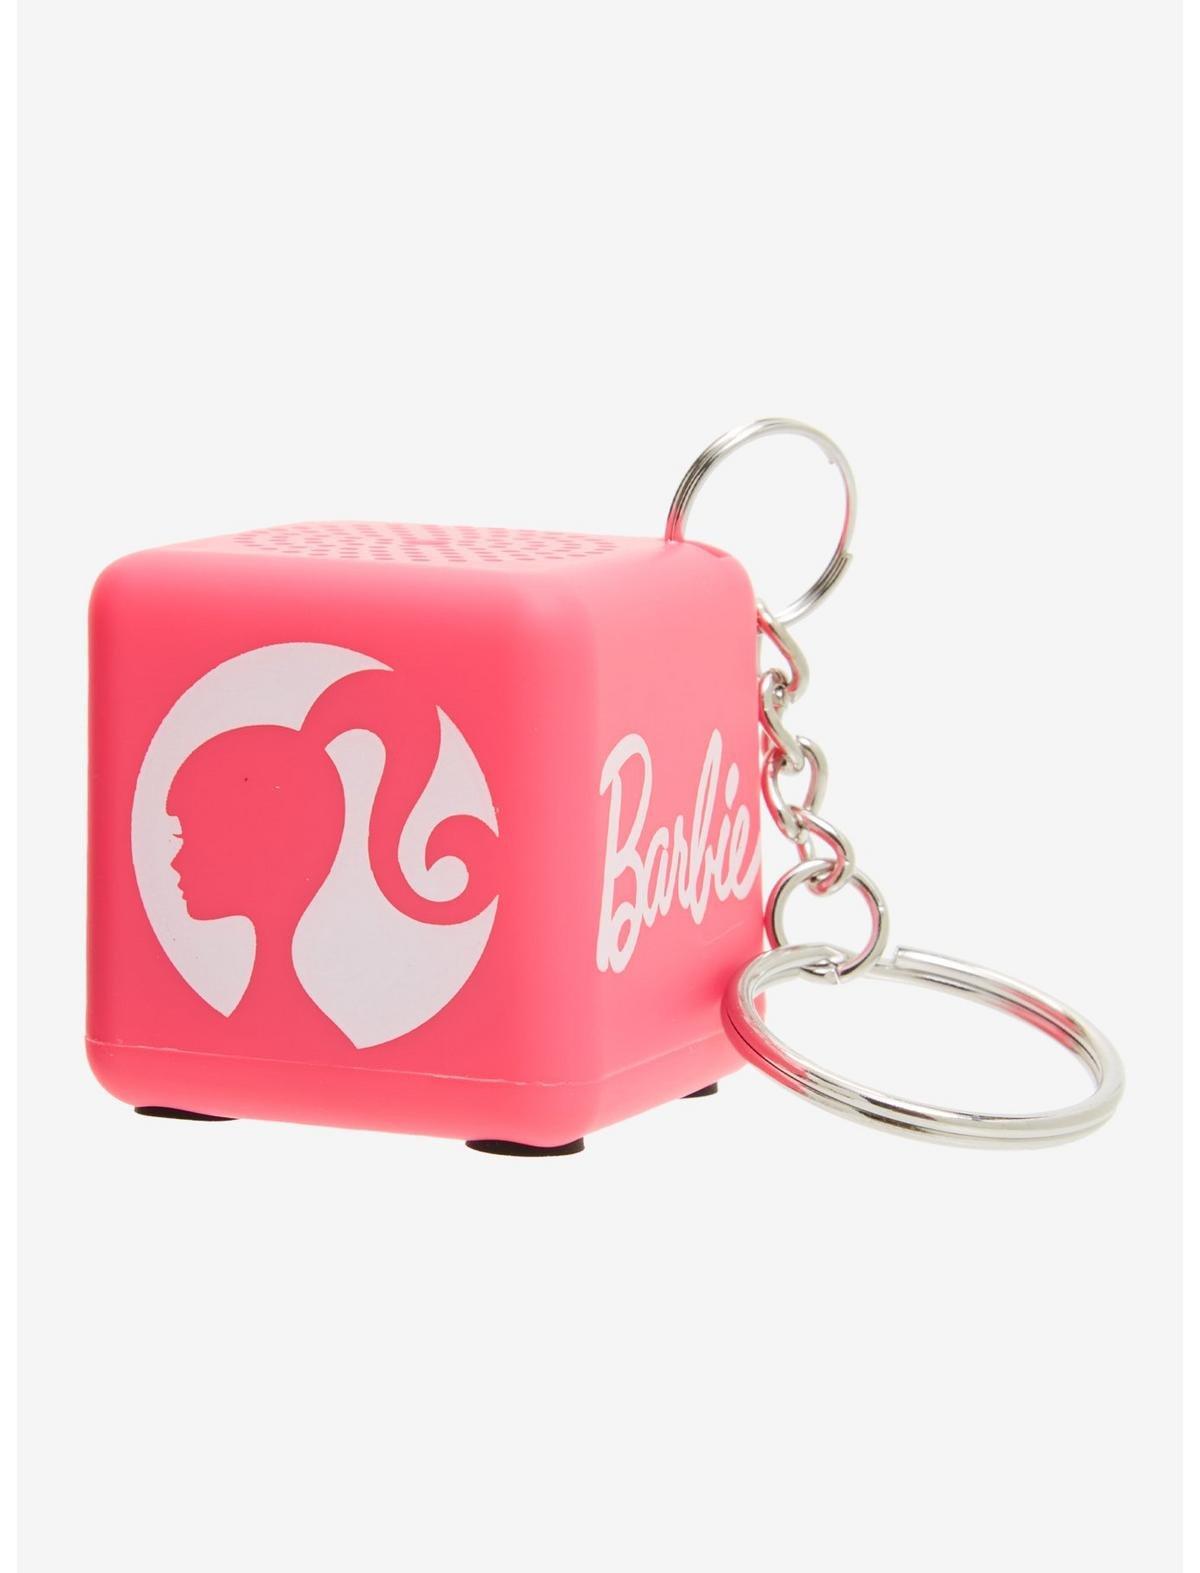 Barbie Keychain Barbie Girl Keychain Personalized Gift 